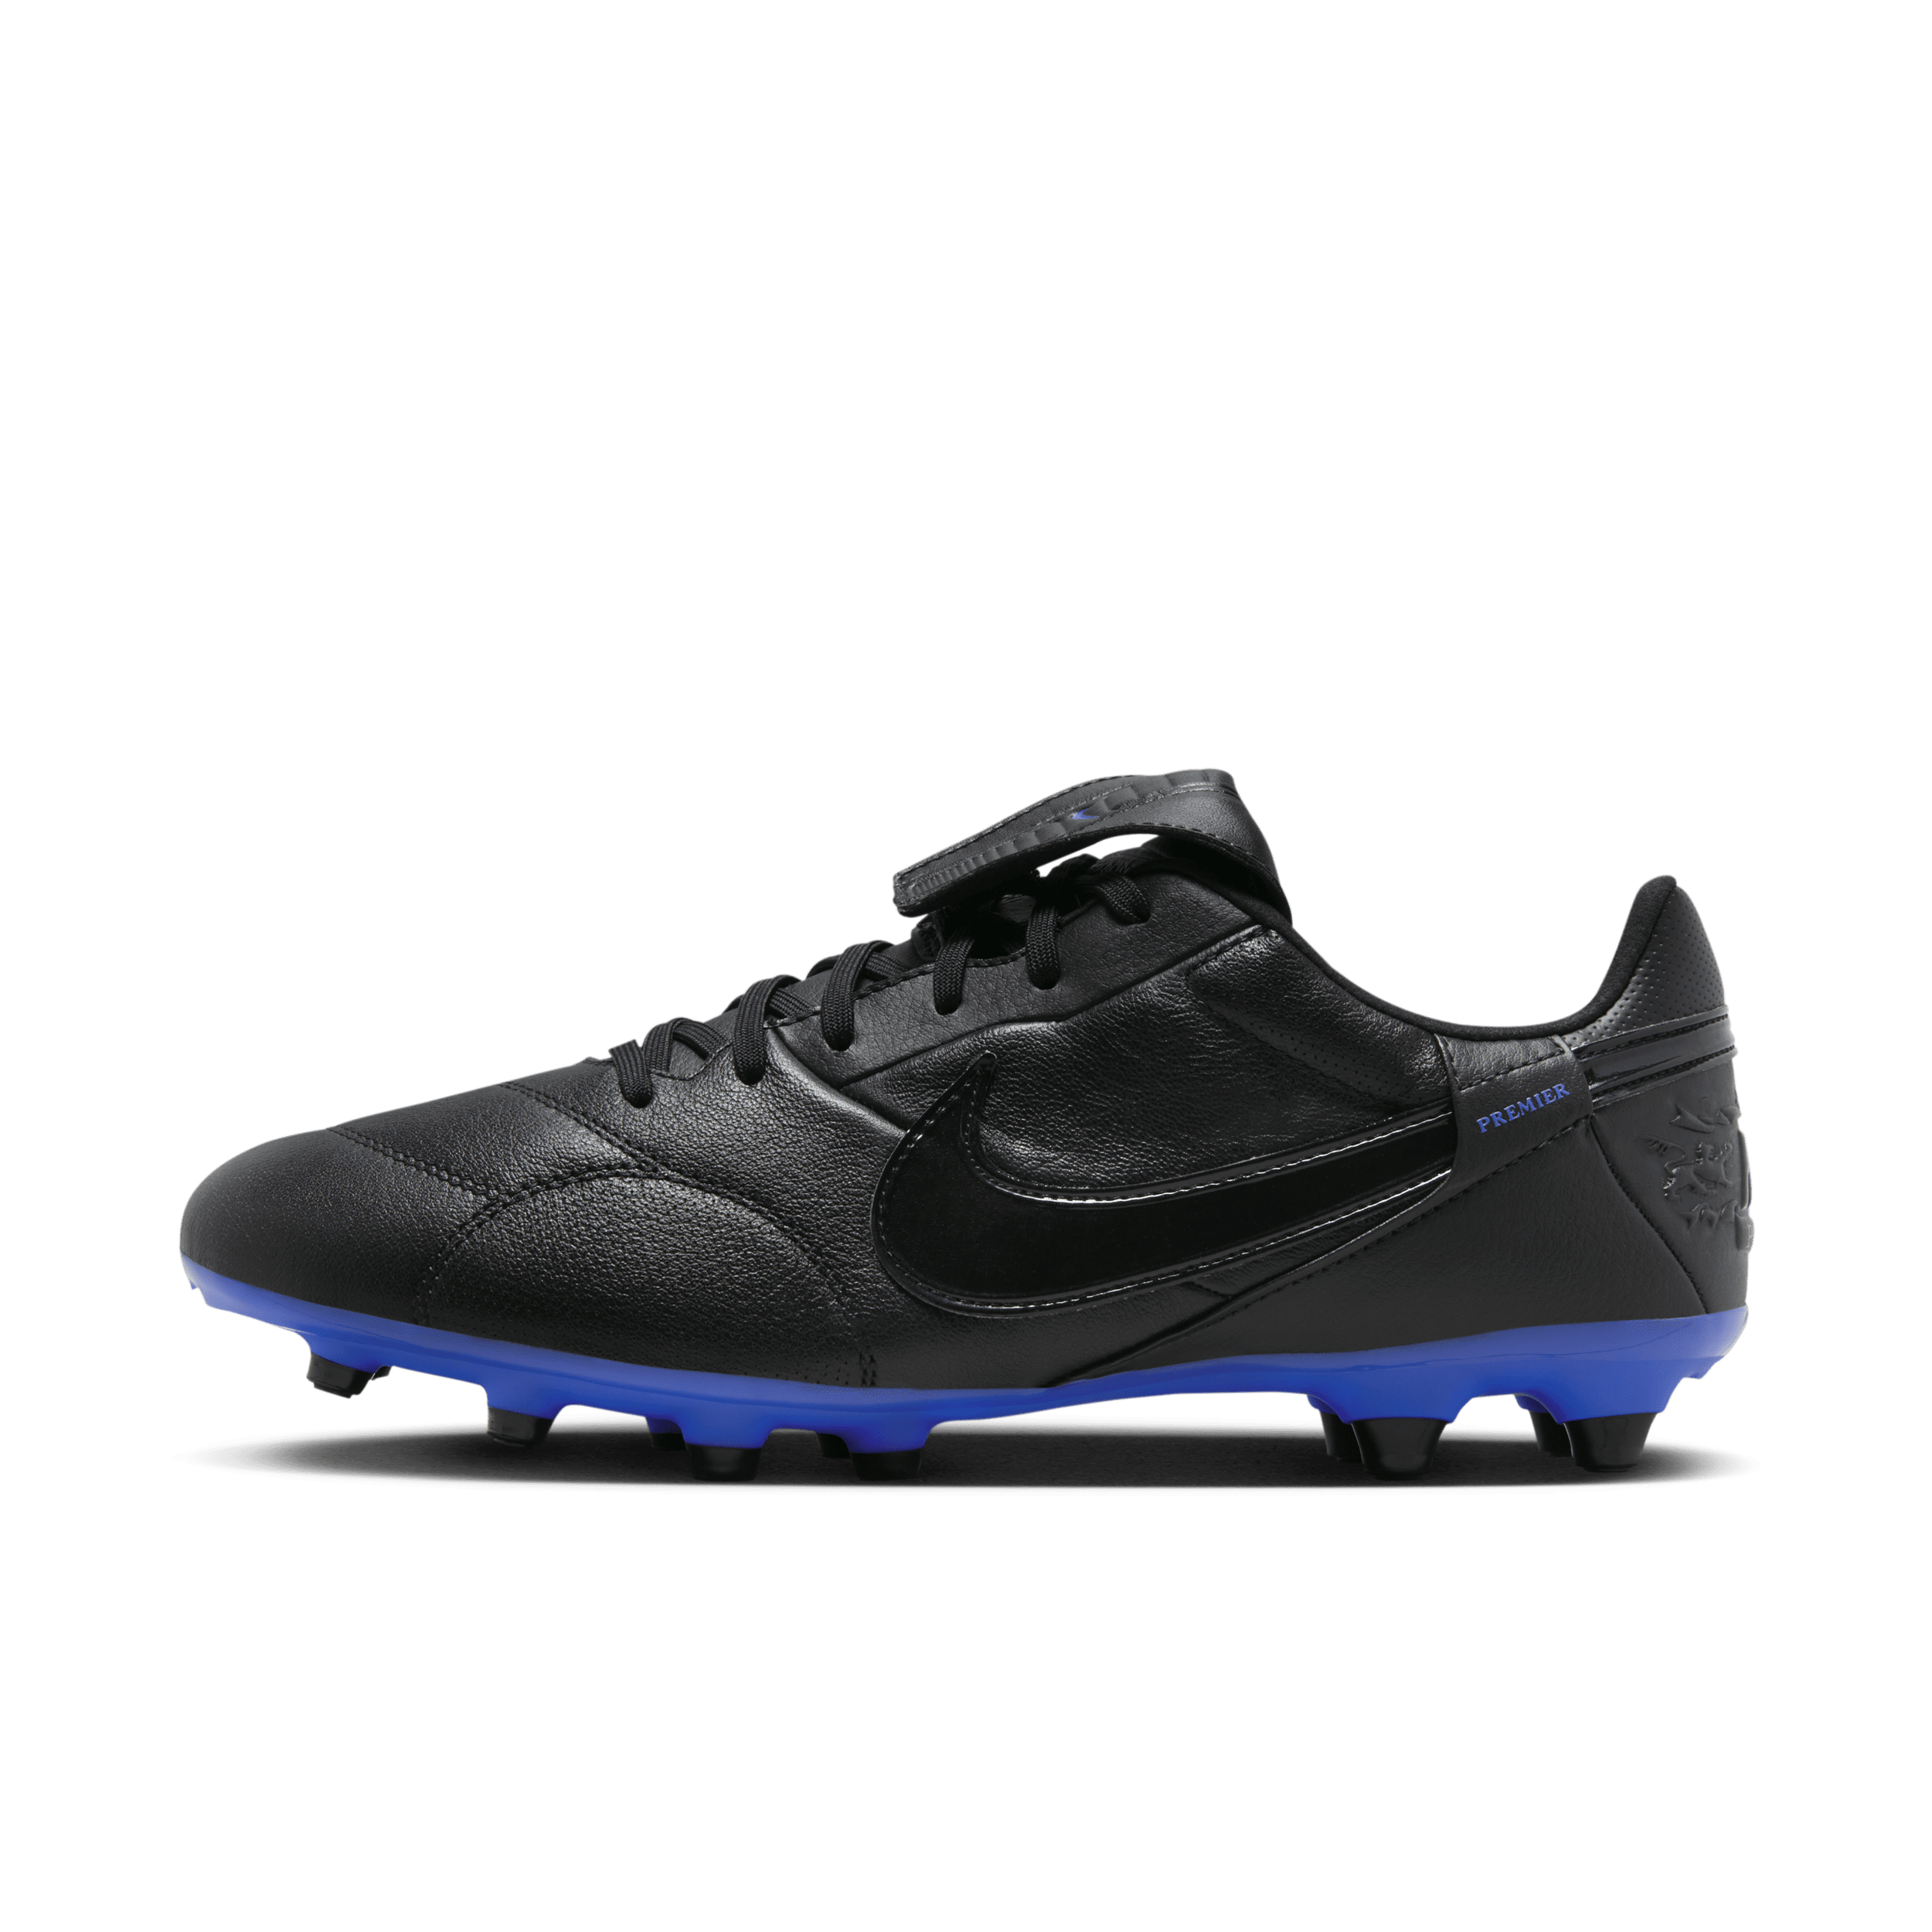 NikePremier 3 Botas de fútbol de perfil bajo para terreno firme - Negro